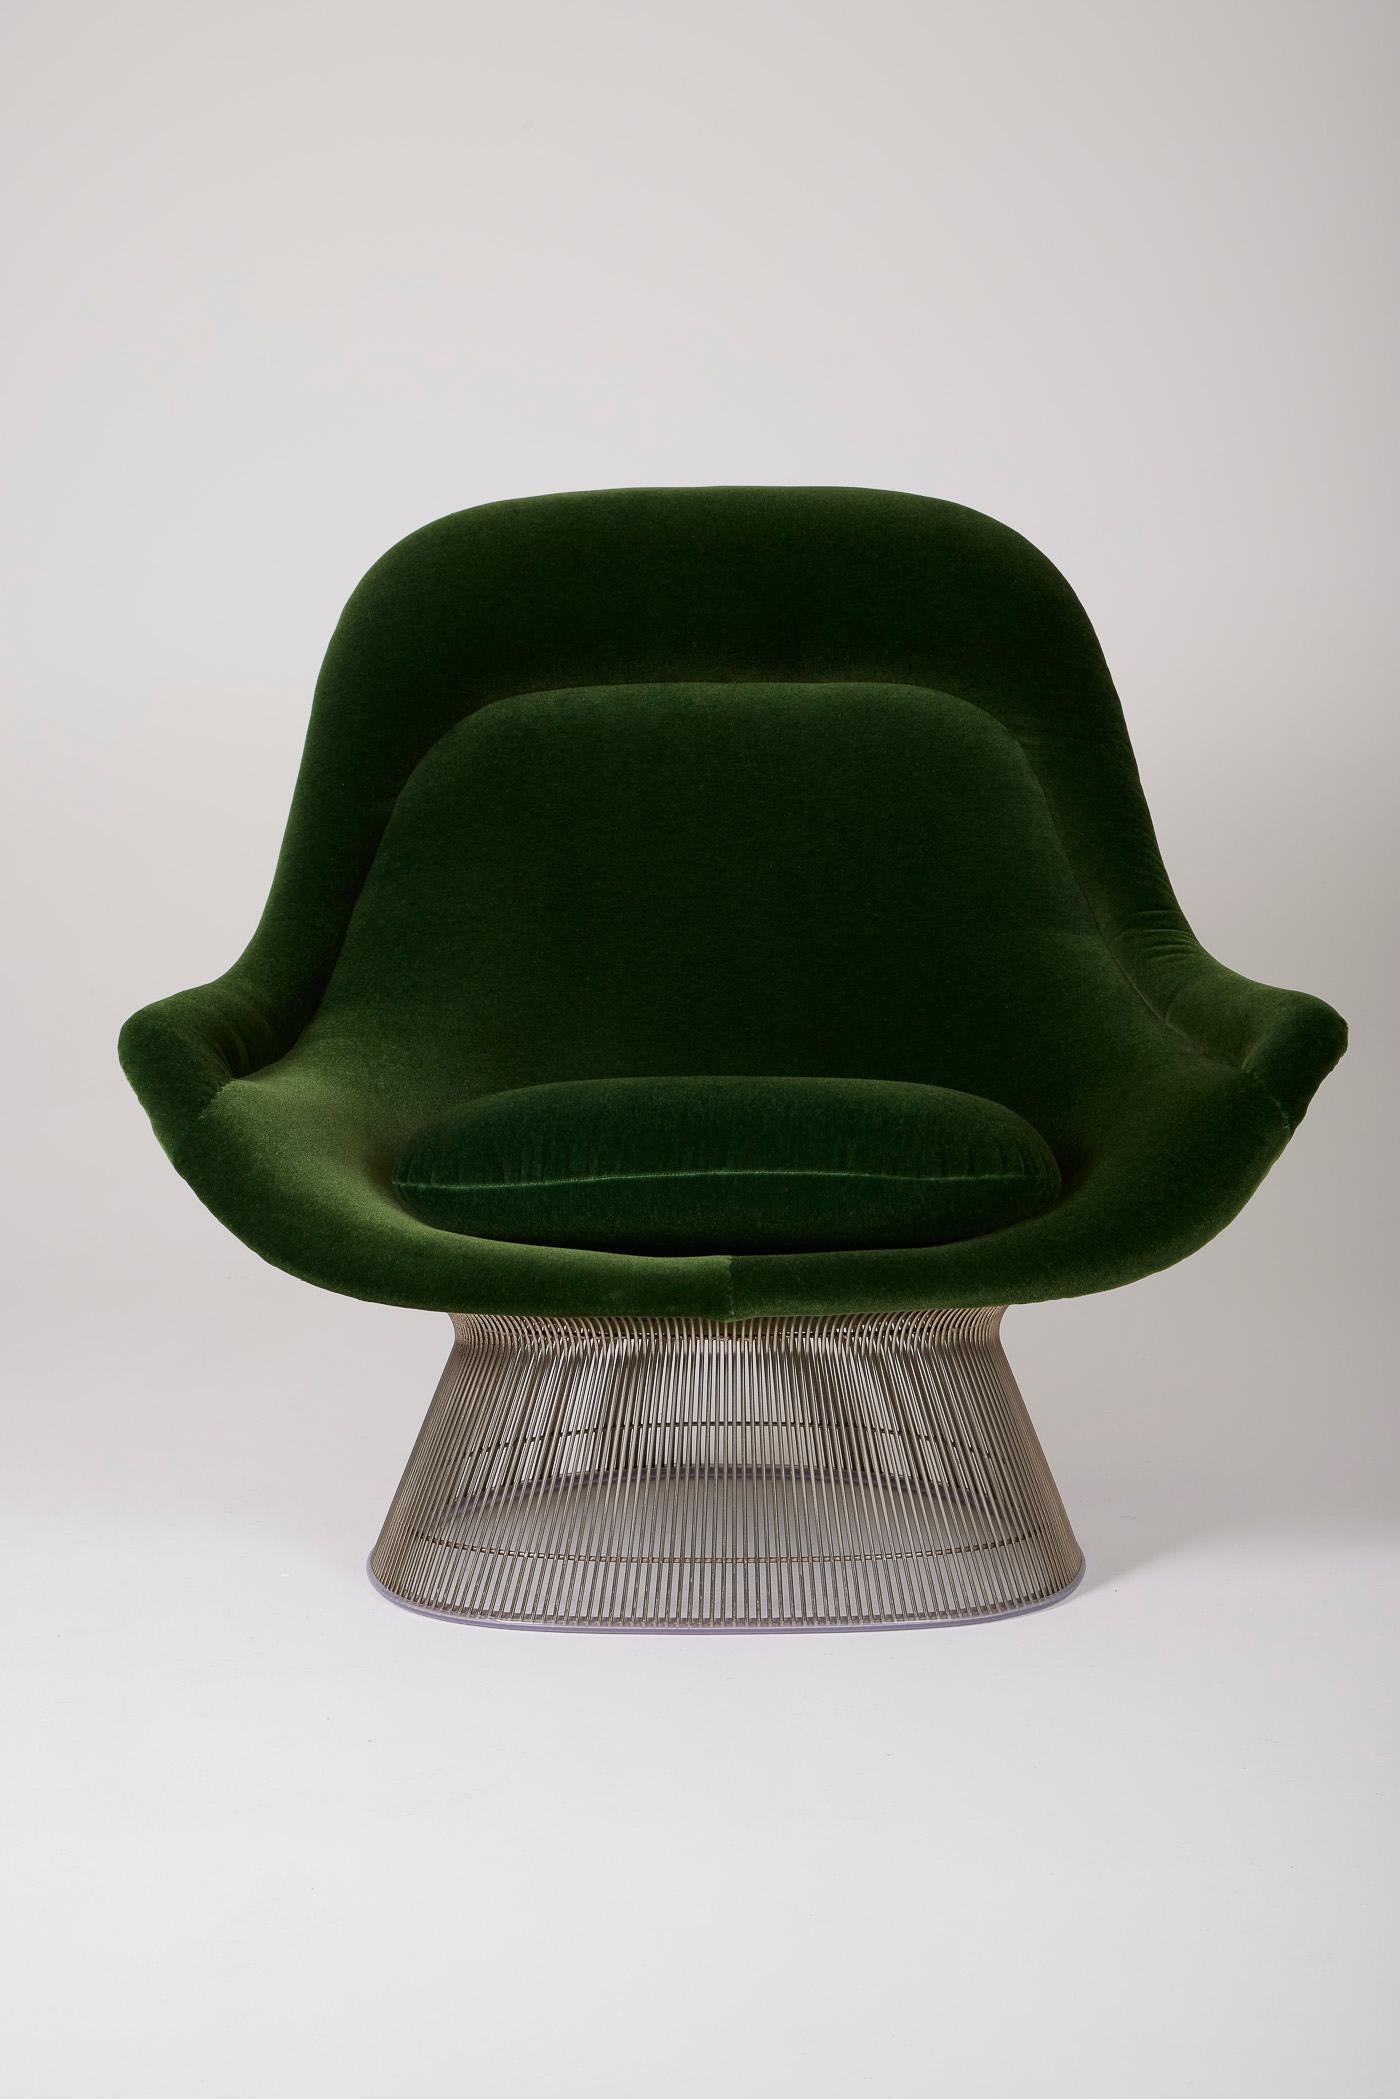 Warren Platner armchair For Sale 7